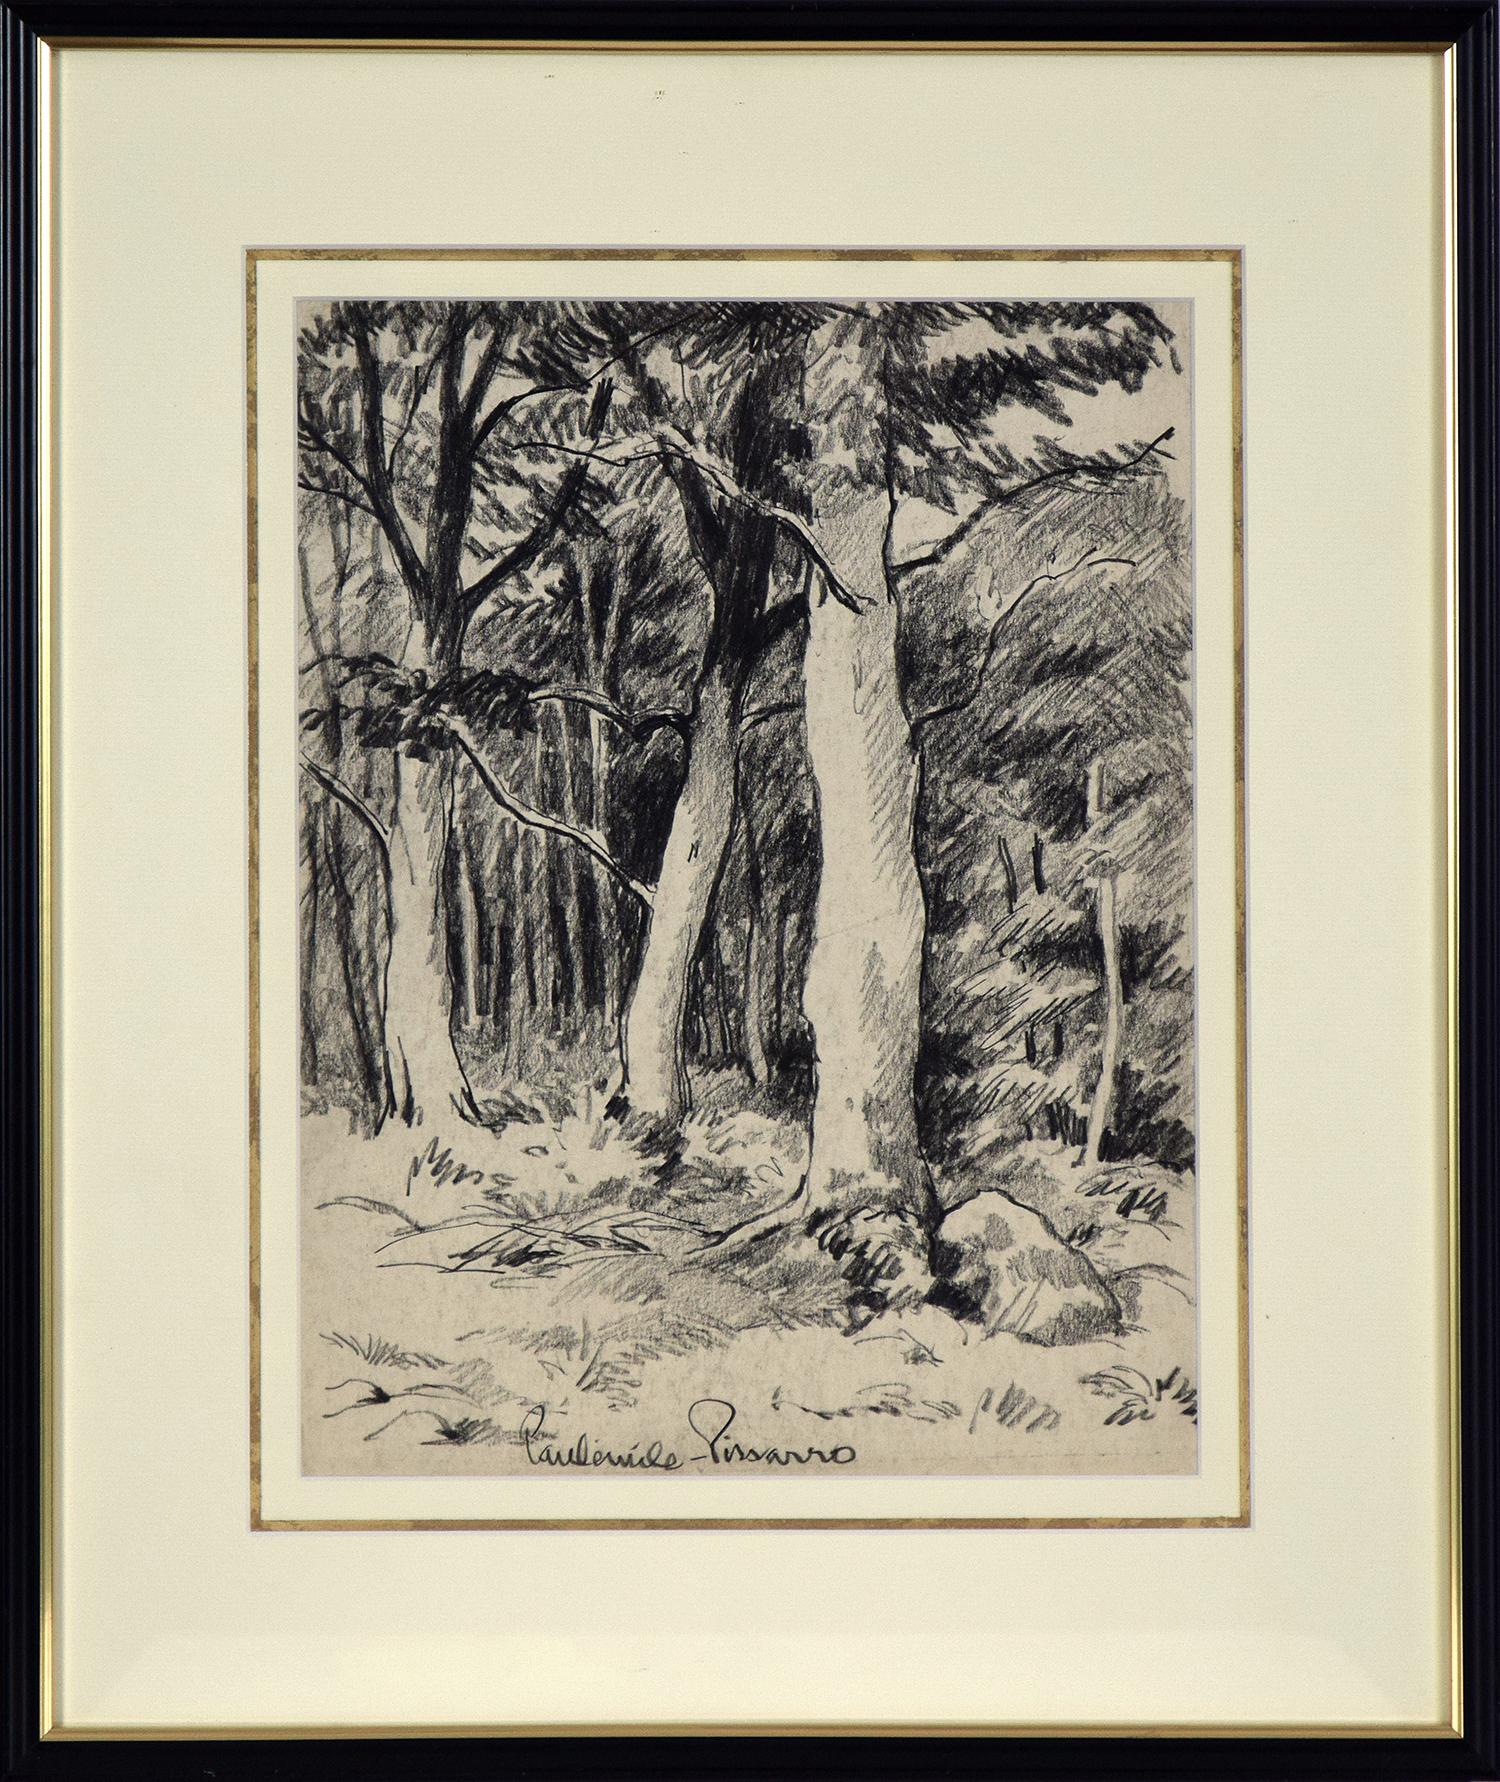 Paul Emile Pissarro Figurative Art - Vue d'une Forêt by Paulémile Pissarro - View of a forest, landscape drawing